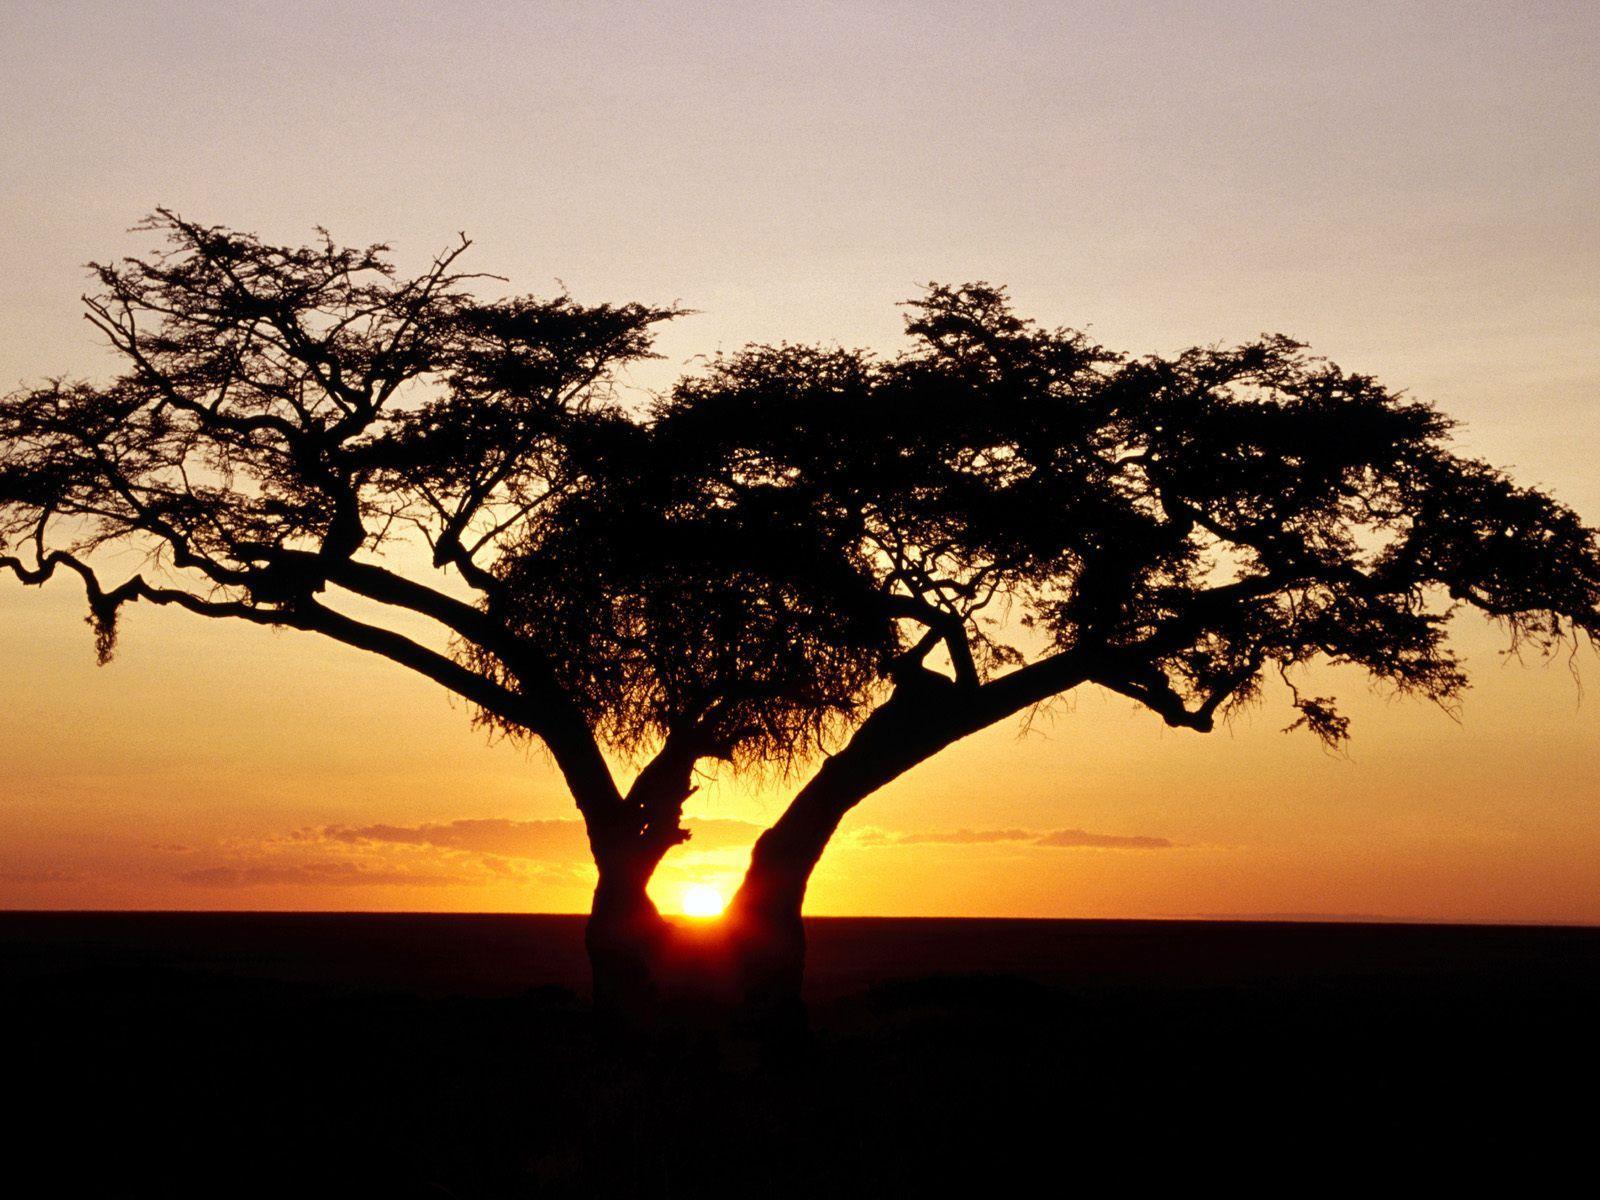 Sunrise, Africa desktop wallpaper